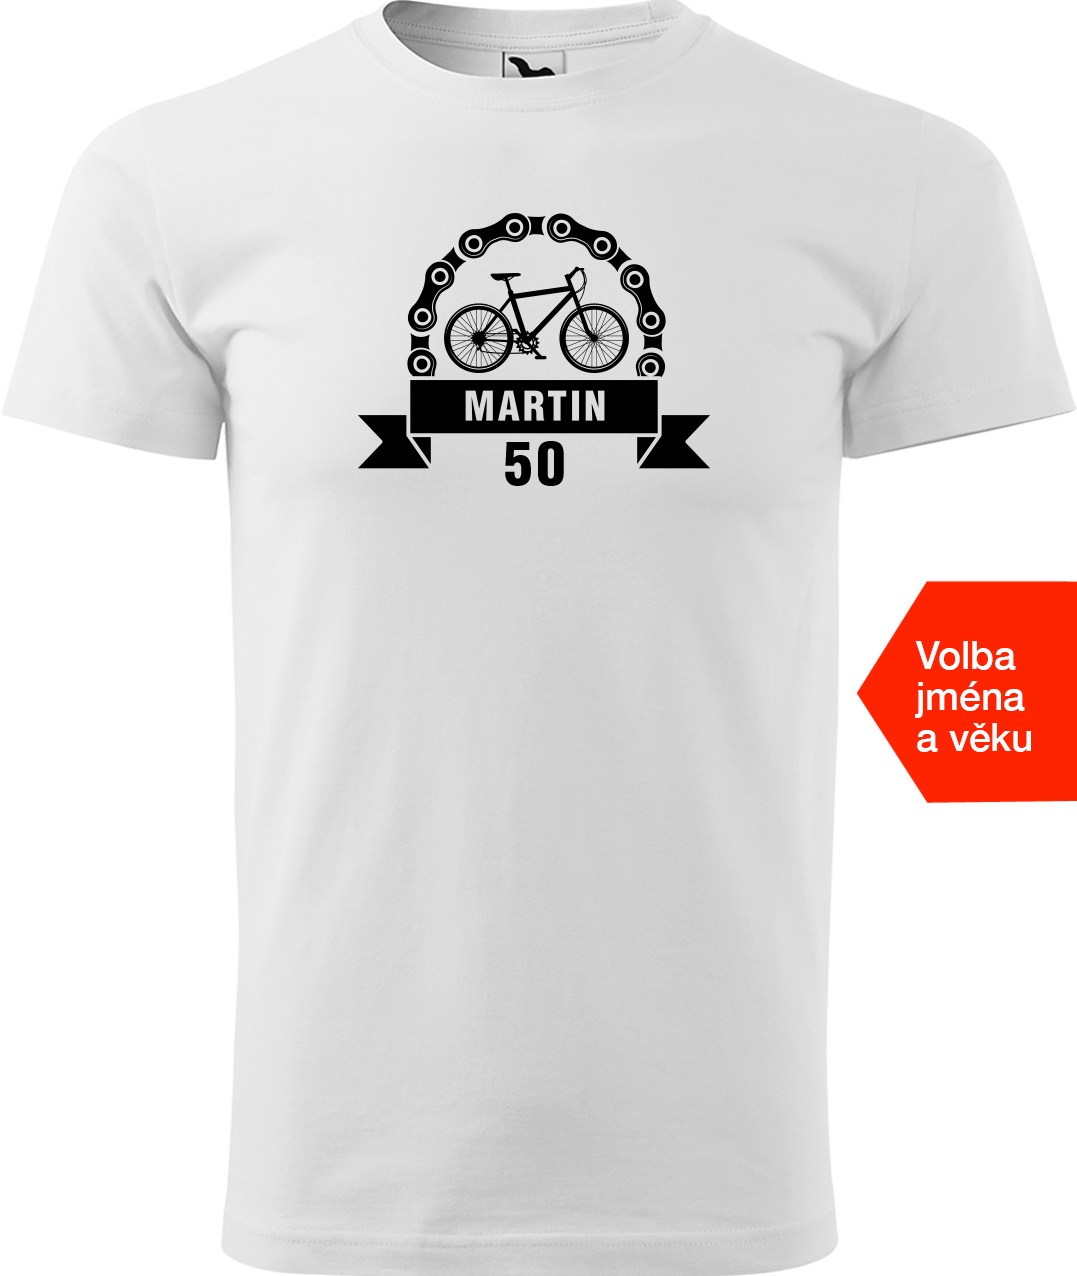 Pánské tričko pro cyklistu se jménem a věkem - Blahopřání Velikost: 2XL, Barva: Bílá (00)